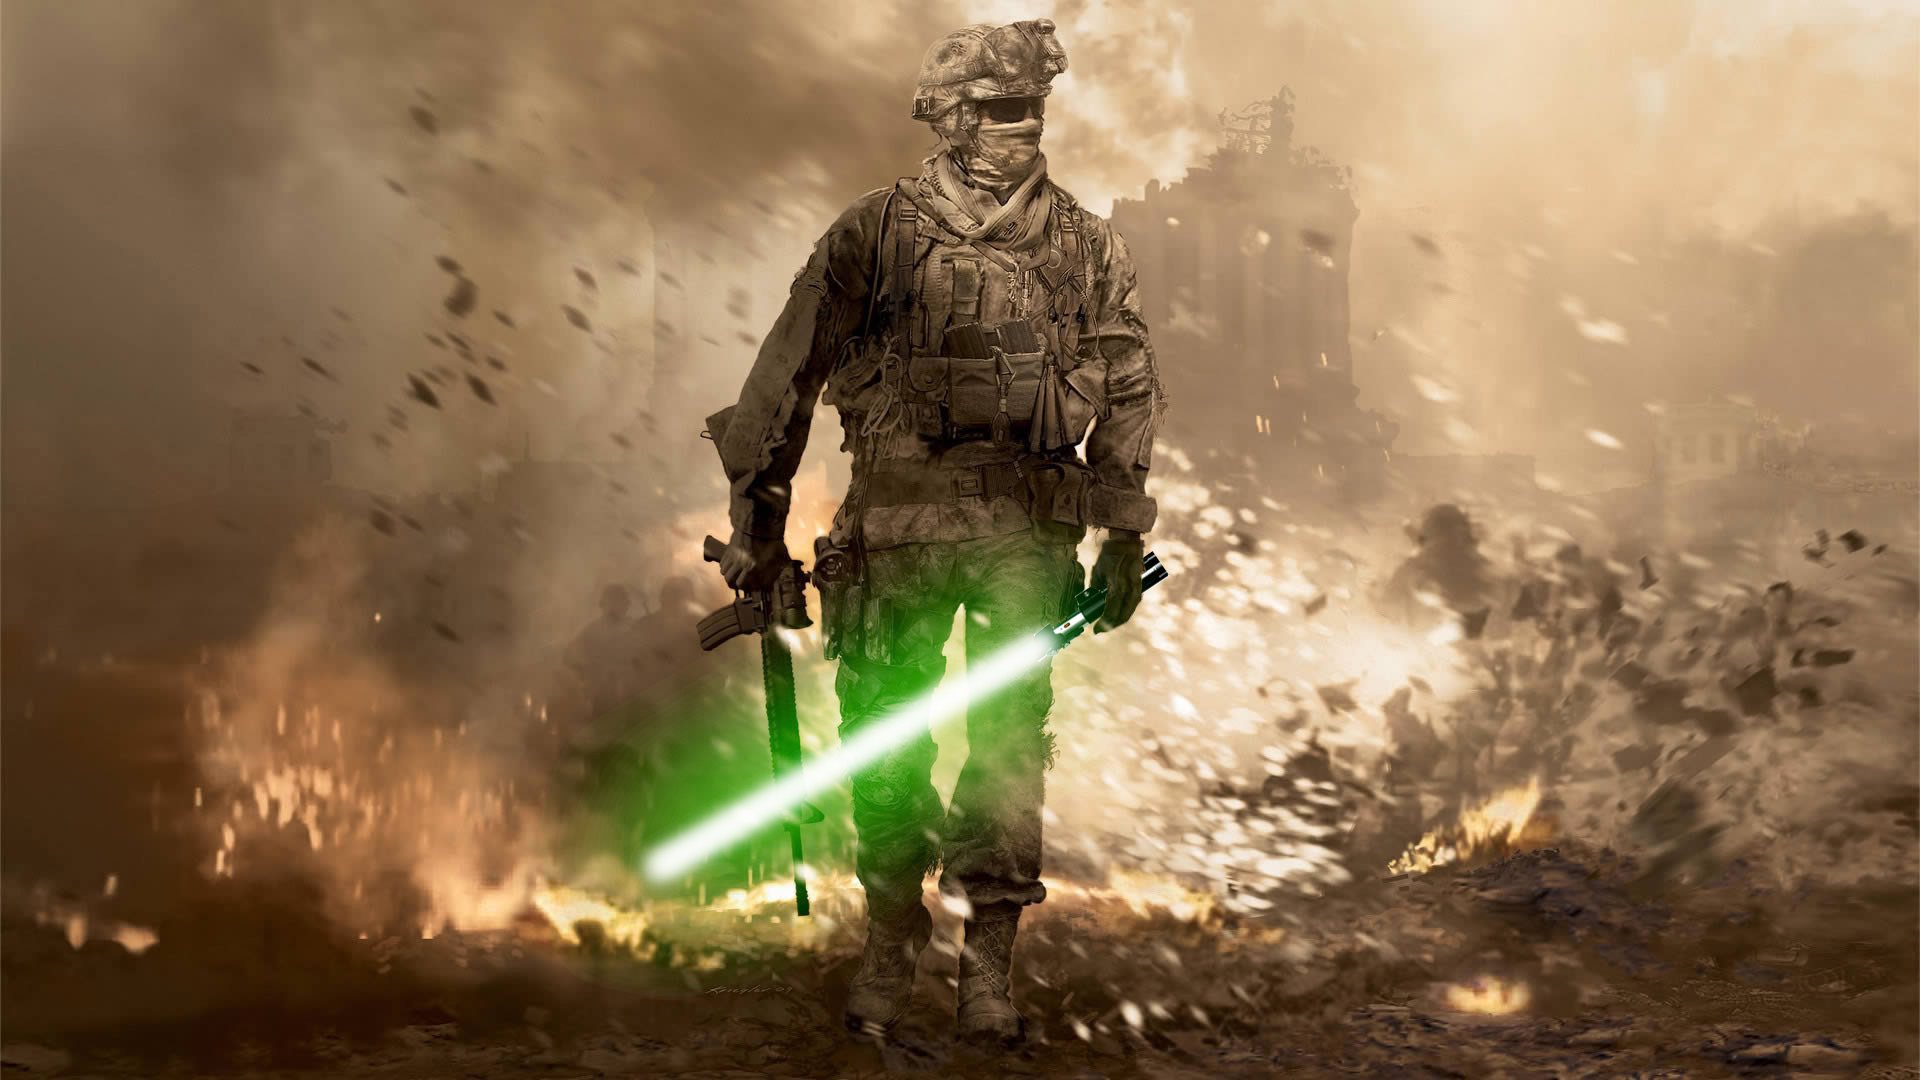 Звездные Войны, мечи, Чувство долга, Зов Duty: Modern Warfare 2 - обои на рабочий стол